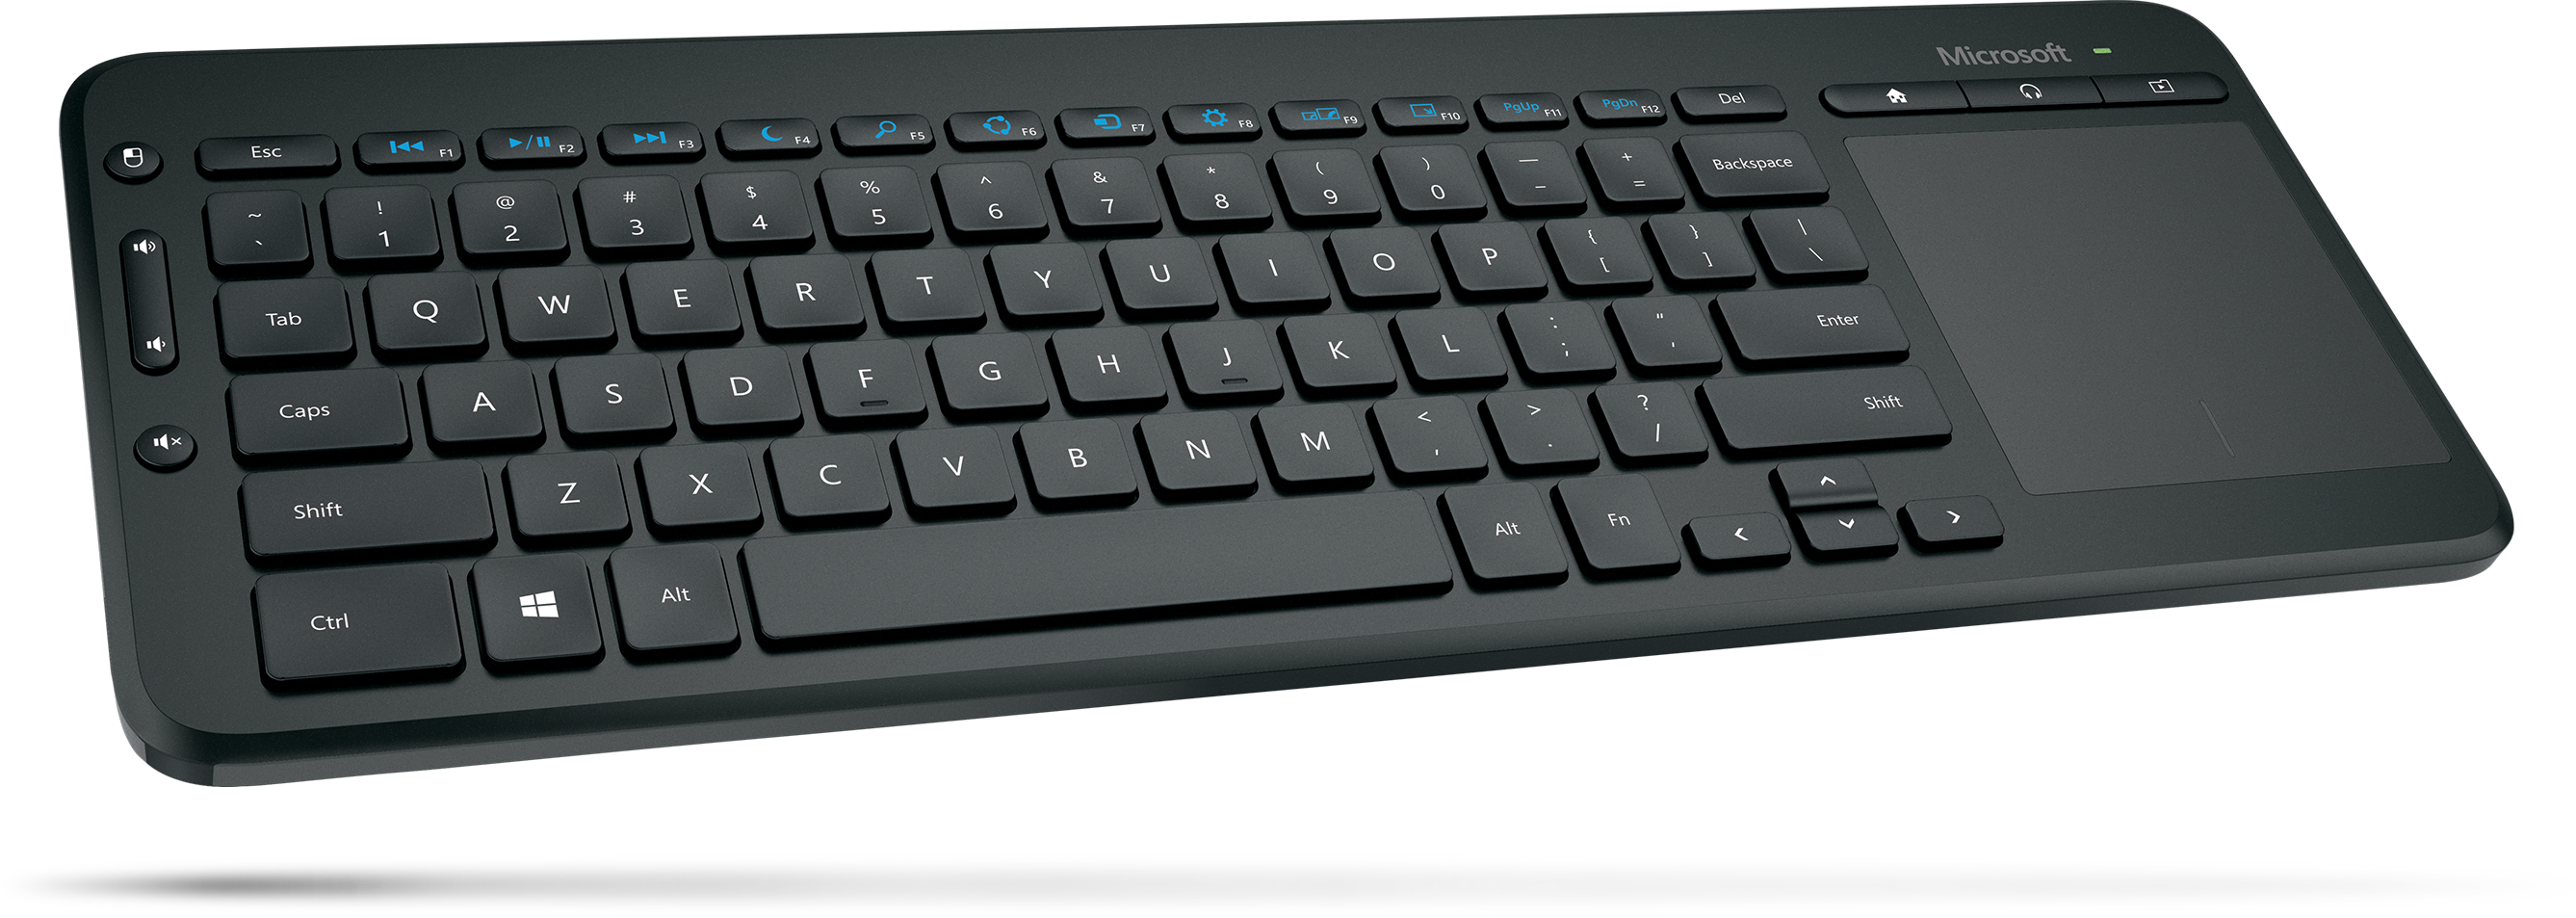 Microsoft All-in-One Media Keyboard – Microsoft Store